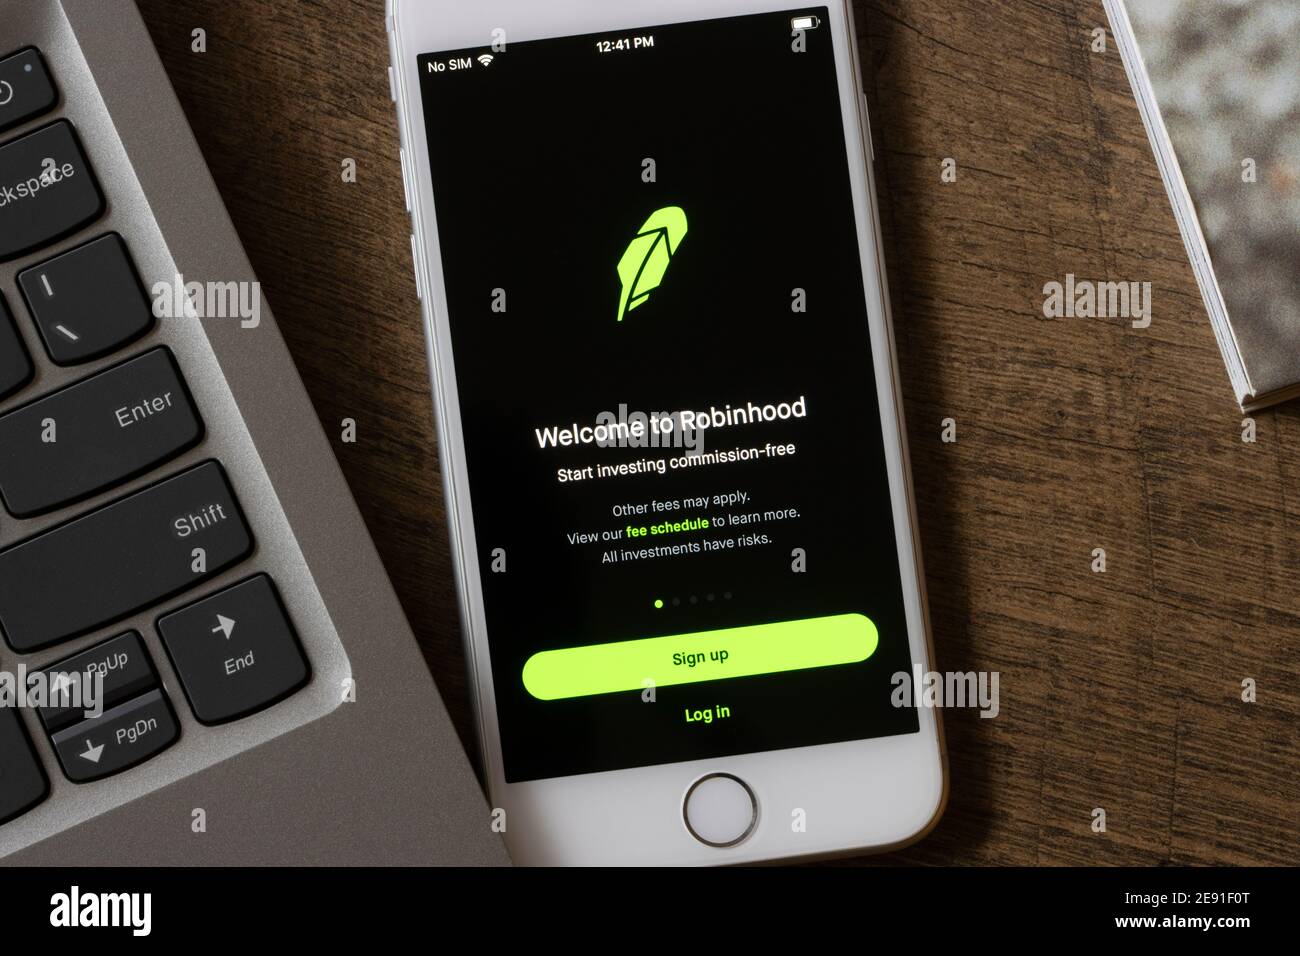 La pagina di accesso dell'app mobile Robinhood viene visualizzata su un iPhone il 1° febbraio 2021. Robinhood Markets, Inc. È una società americana di servizi finanziari. Foto Stock